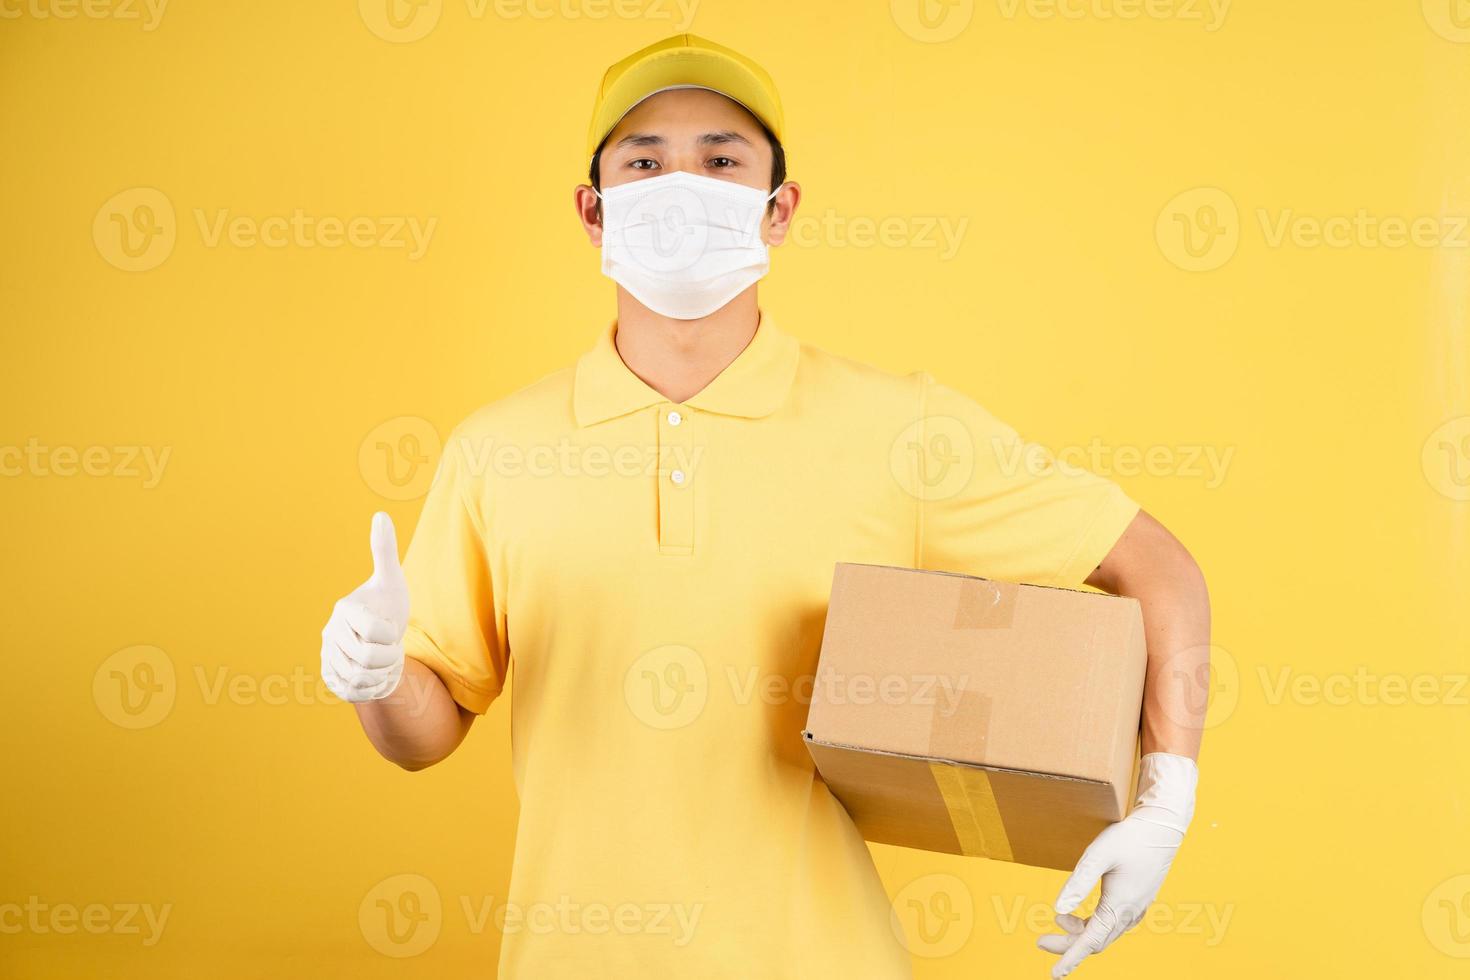 Retrato de repartidor masculino con máscara durante la temporada epidémica en el fondo foto